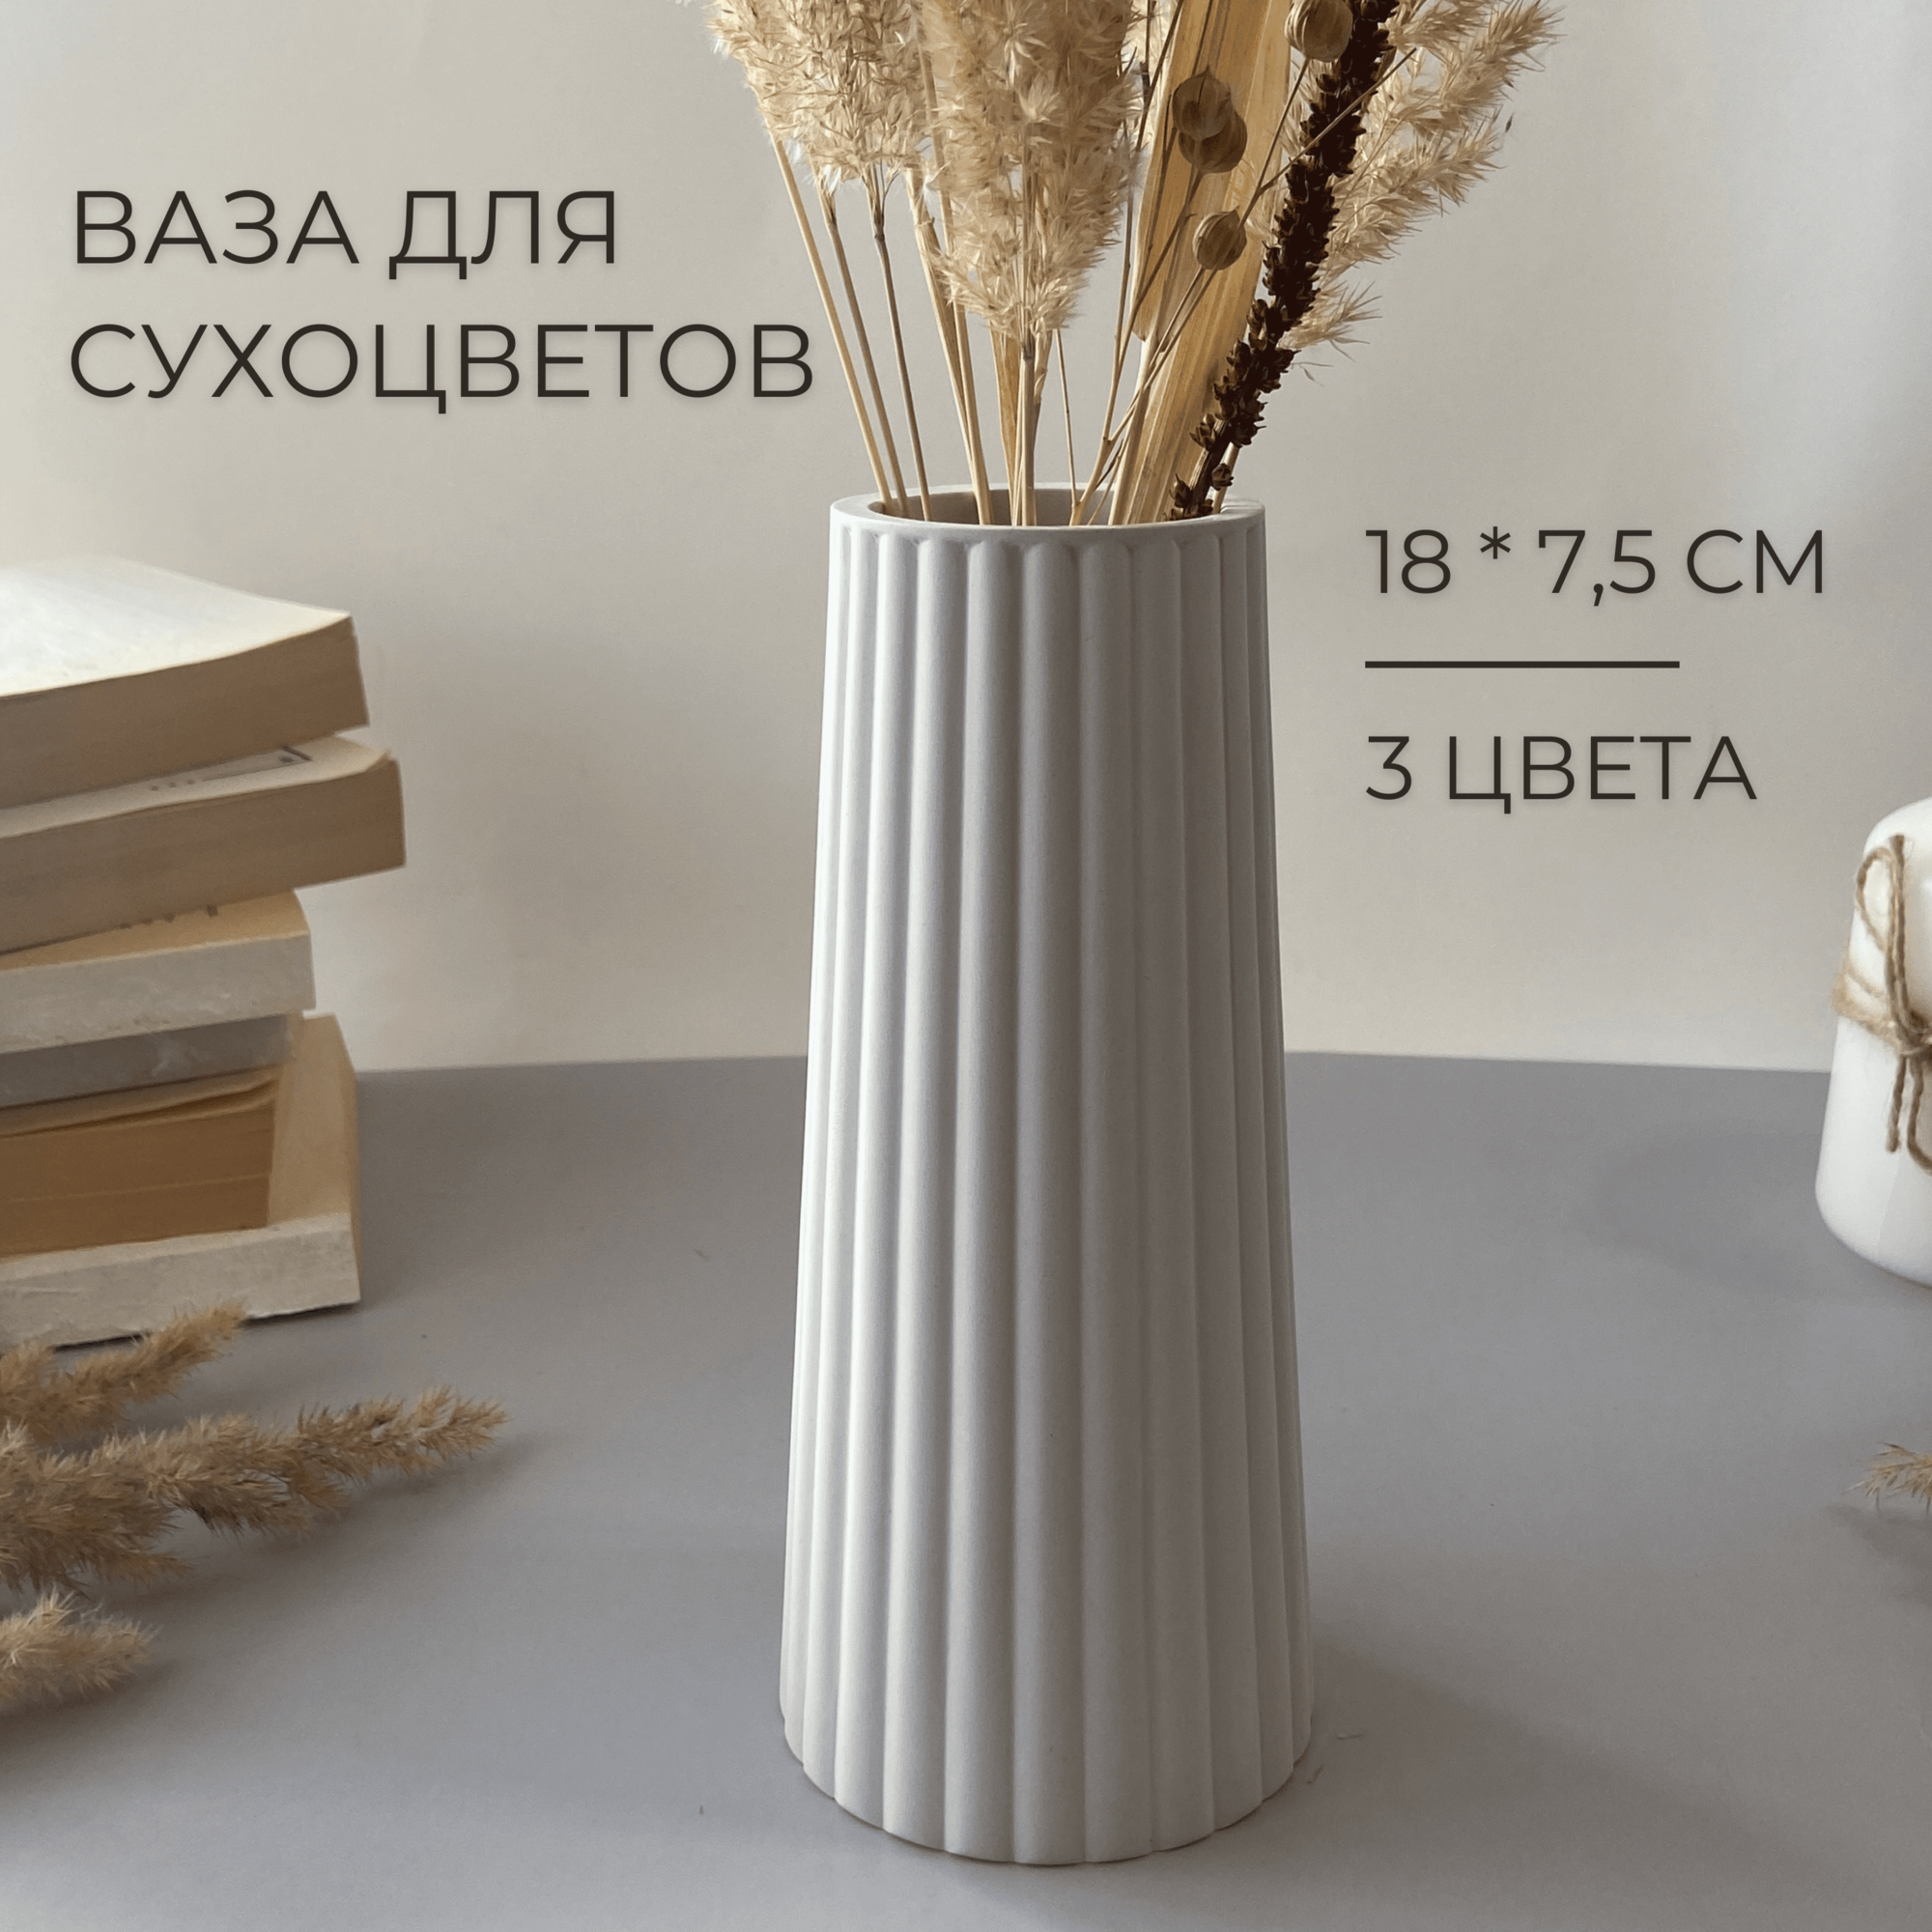 Большая декоративная ваза для сухоцветов, 18 см, настольная ваза для искусственных цветов и сухих букетов, белый